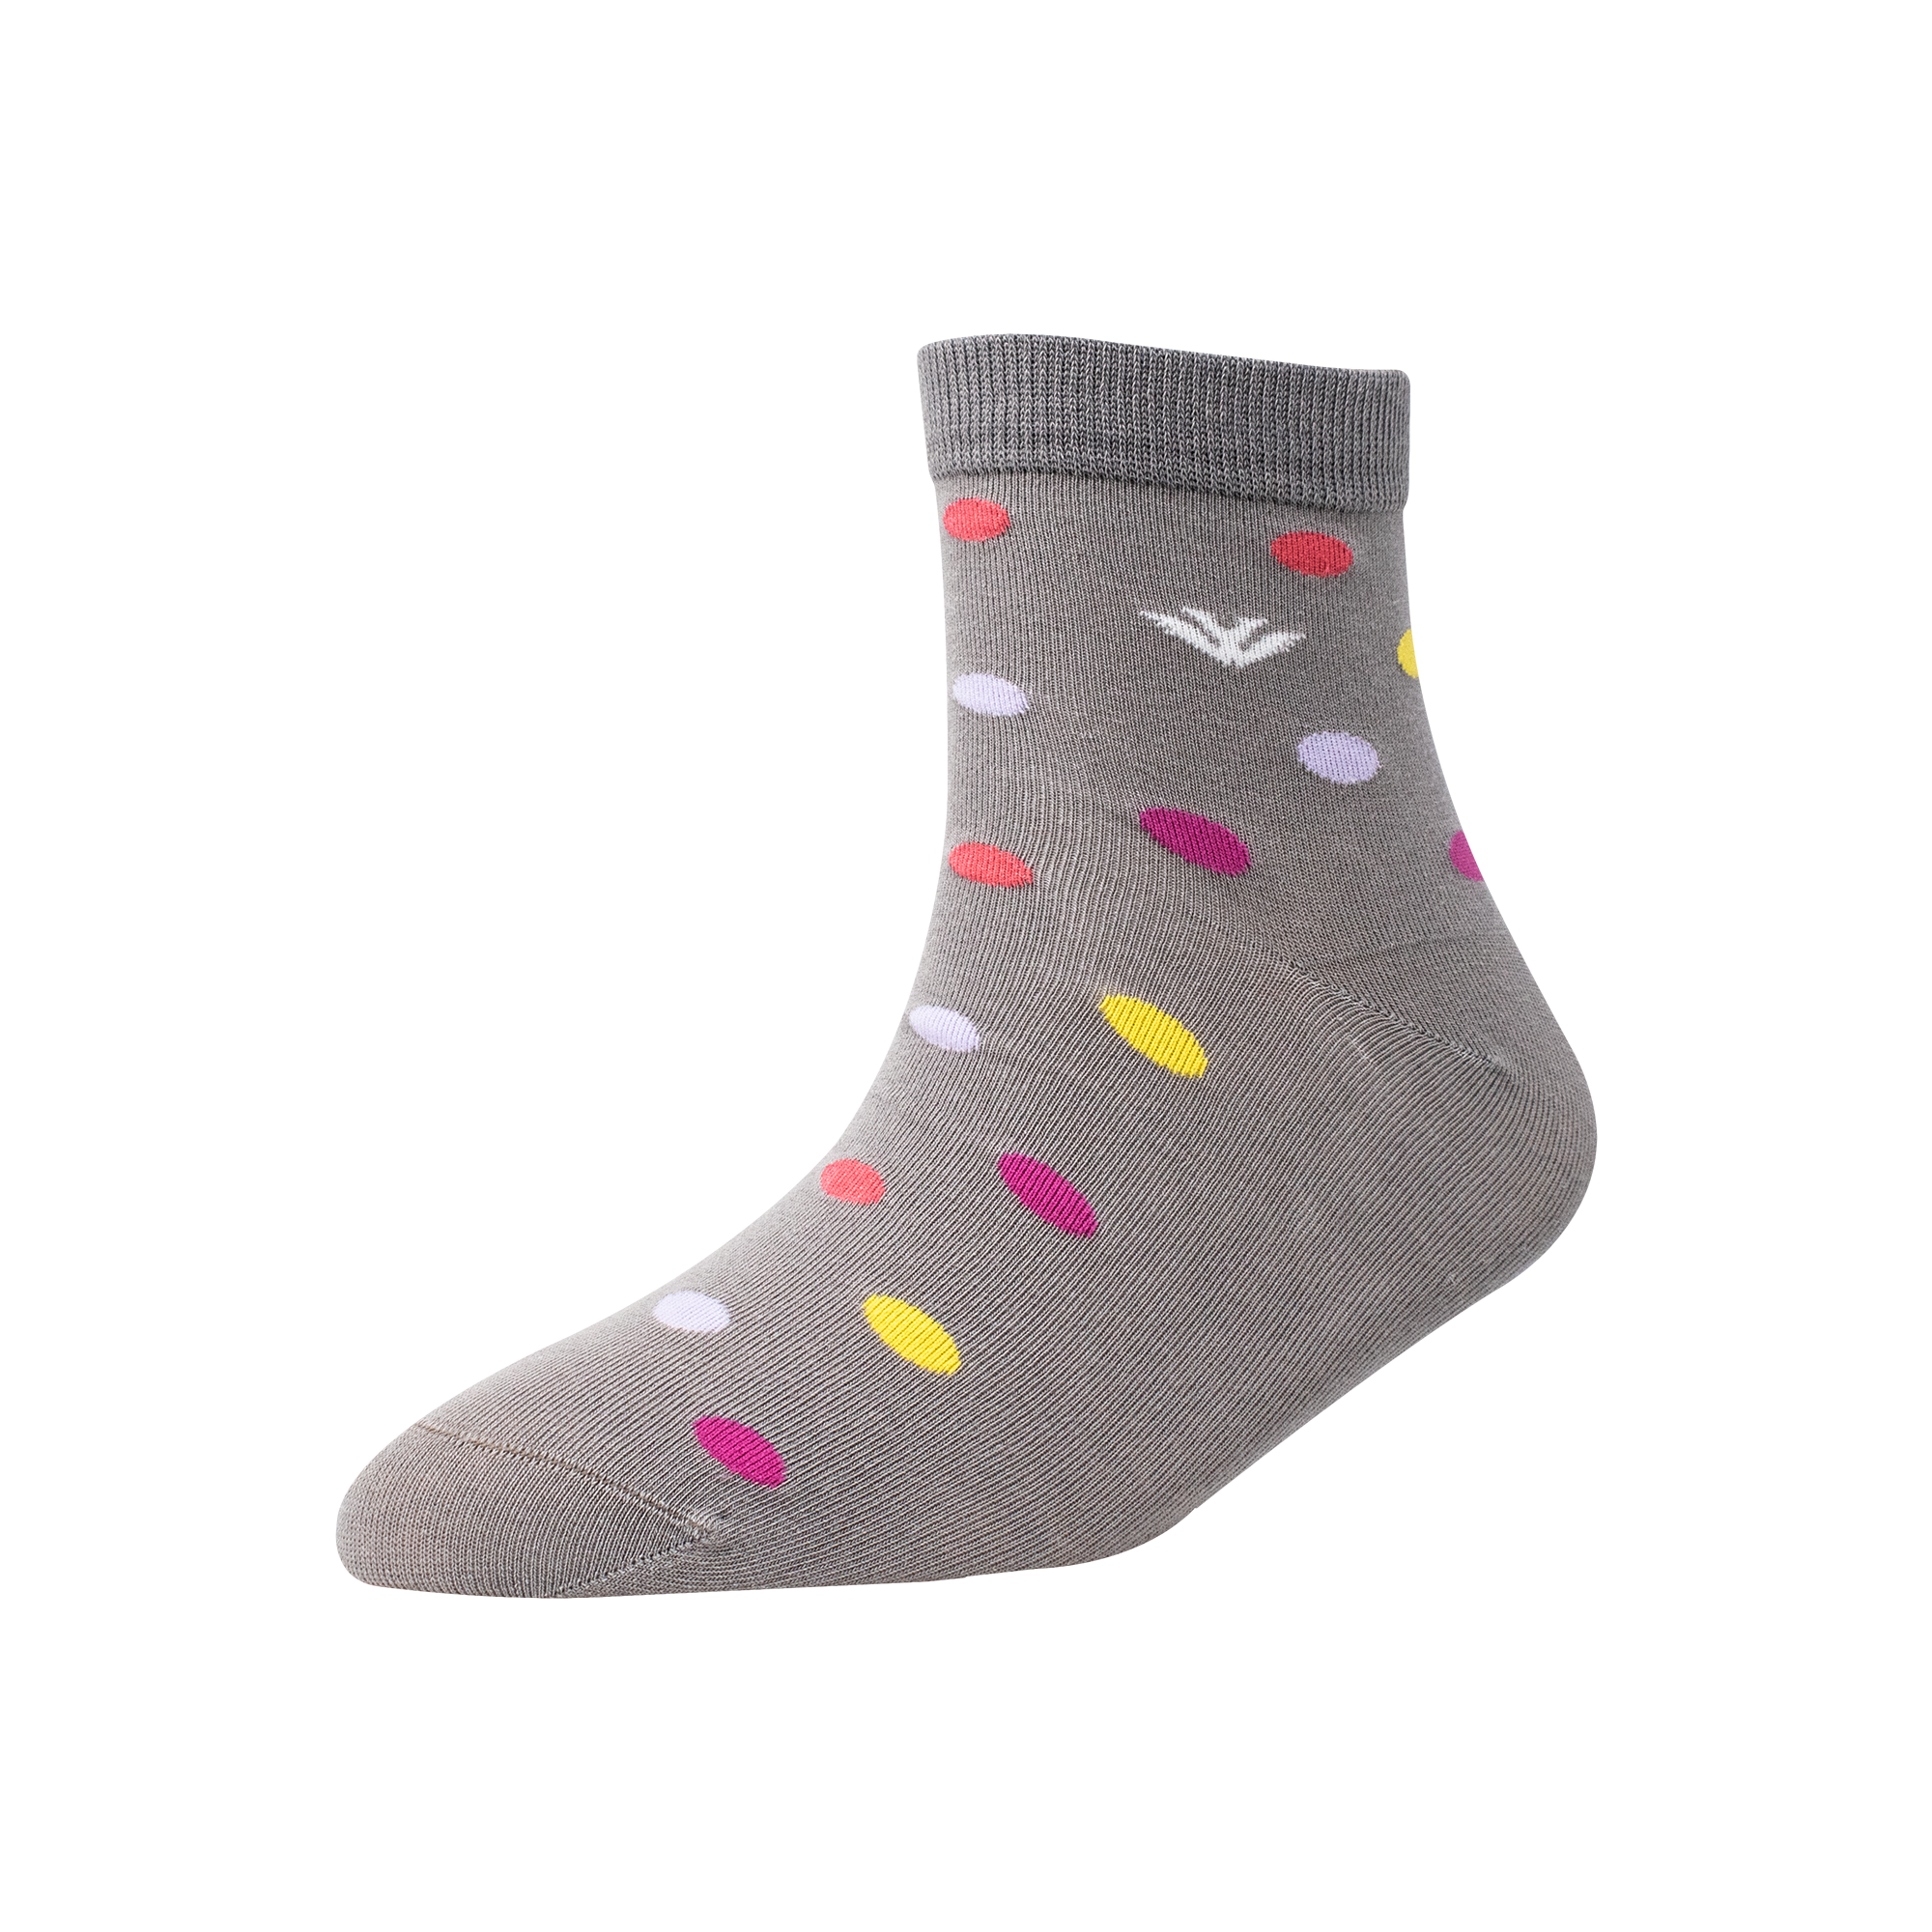 Men's AL016 Pack of 3 Ankle Socks